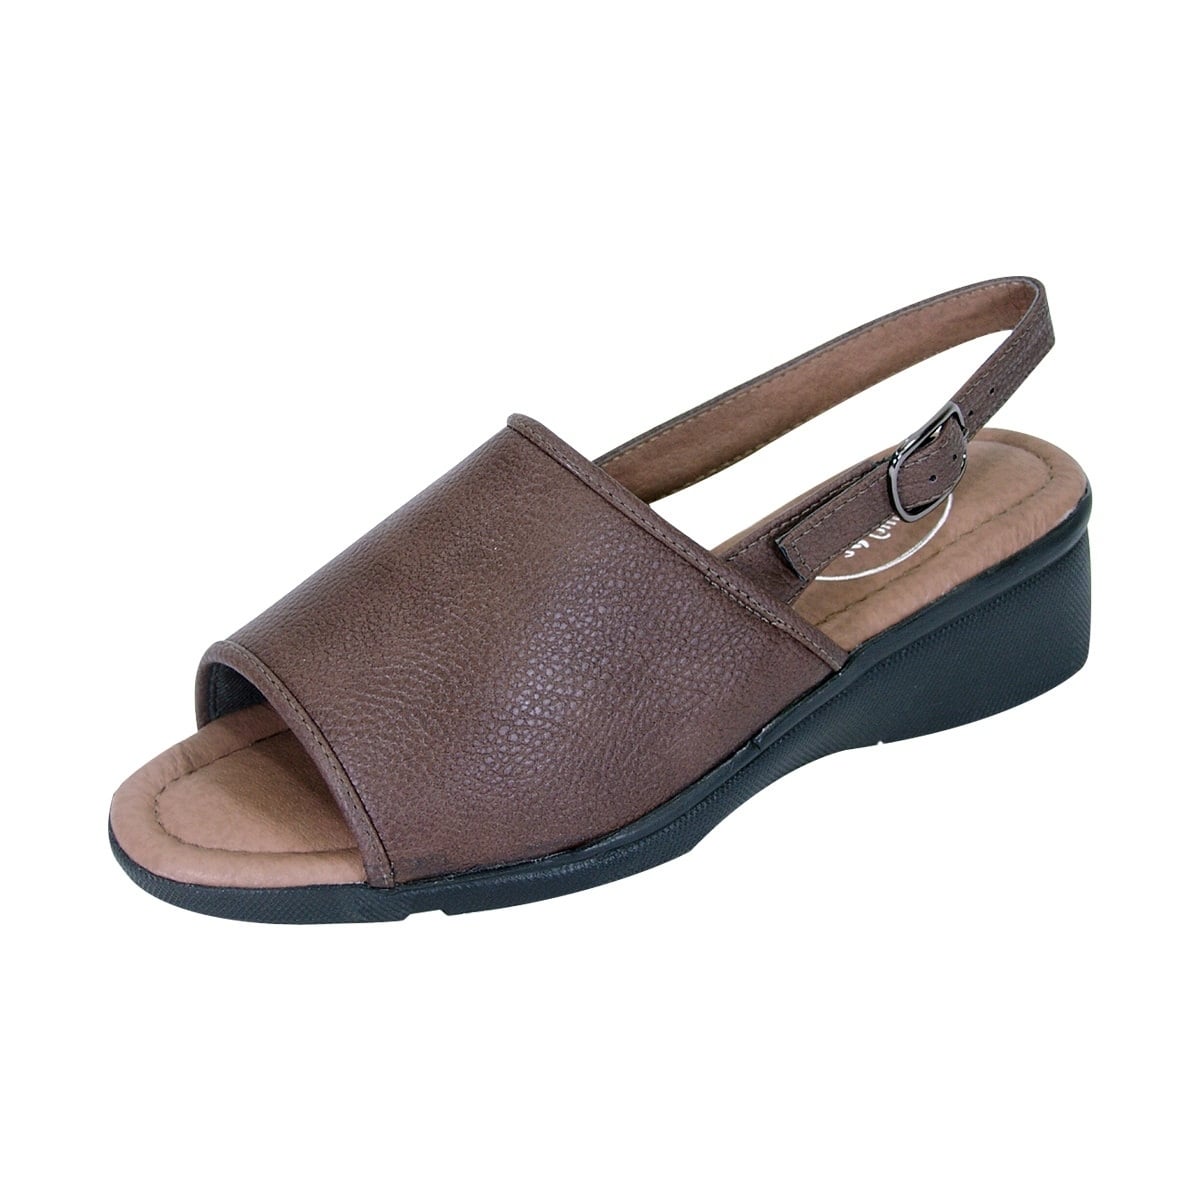 wide width comfort sandals